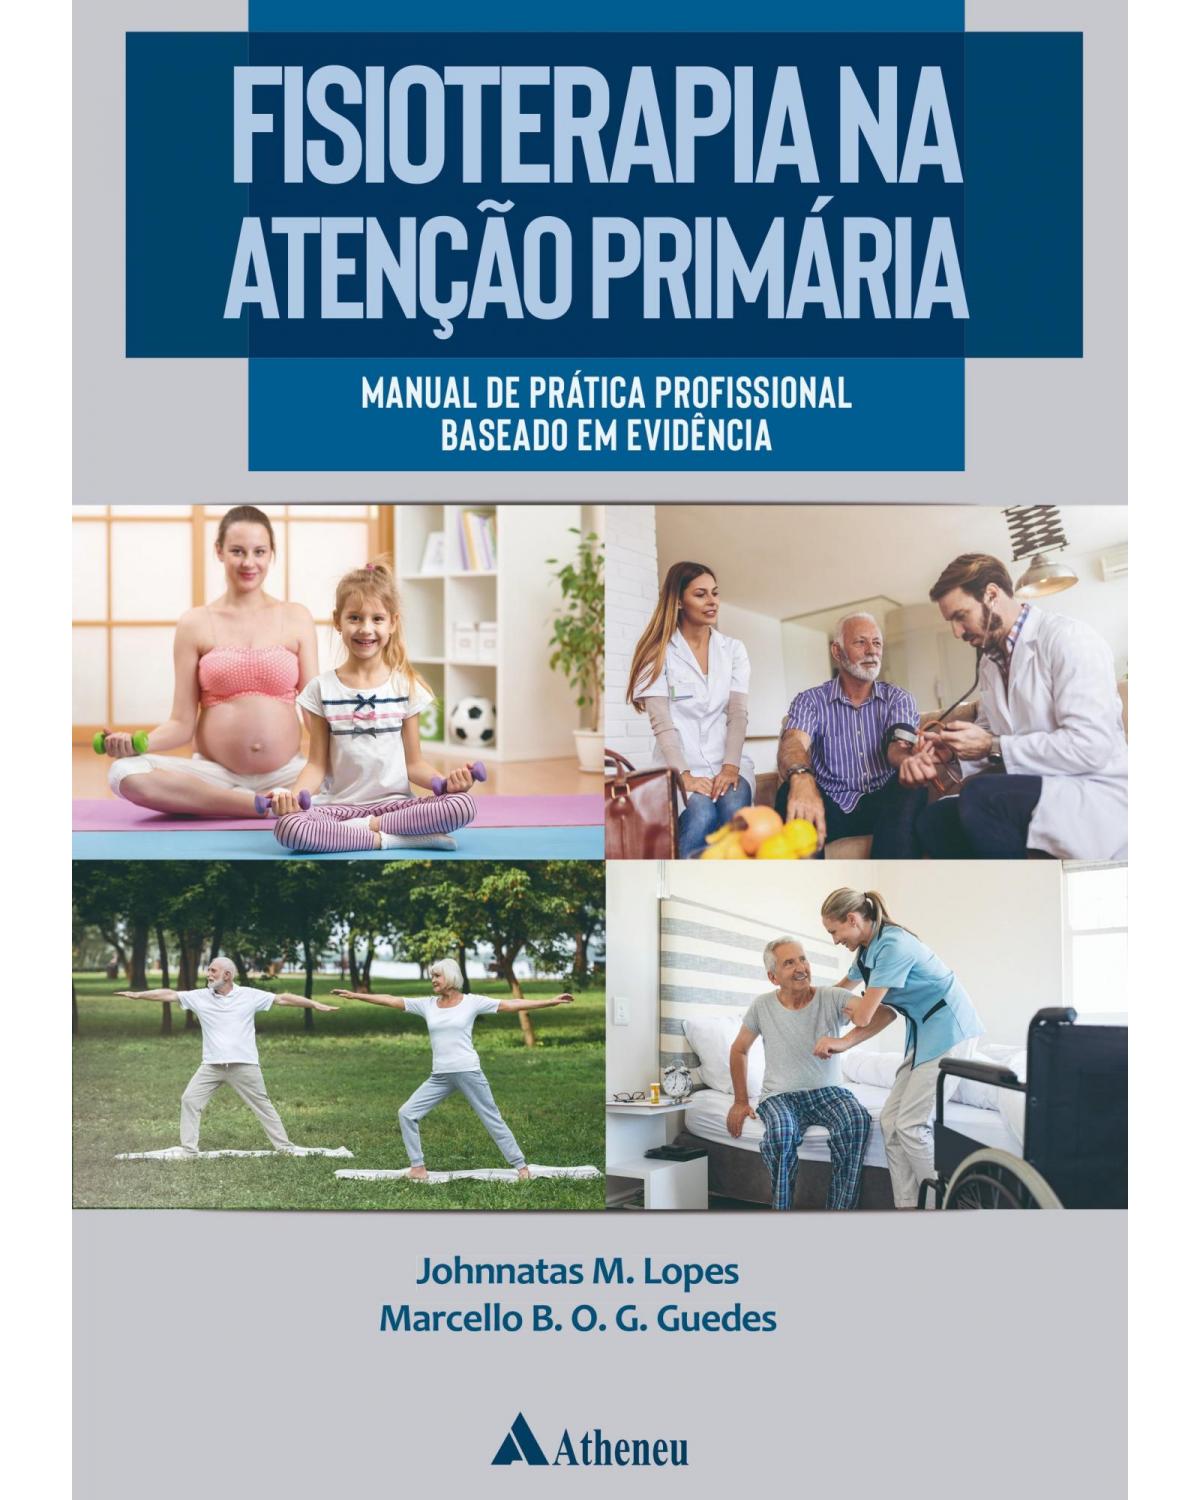 Fisioterapia na atenção primária - manual de prática profissional baseado em evidência - 1ª Edição | 2019